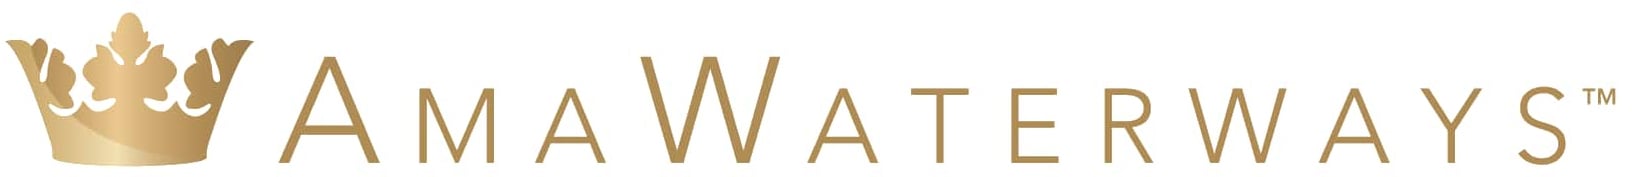 amawaterways_logo image